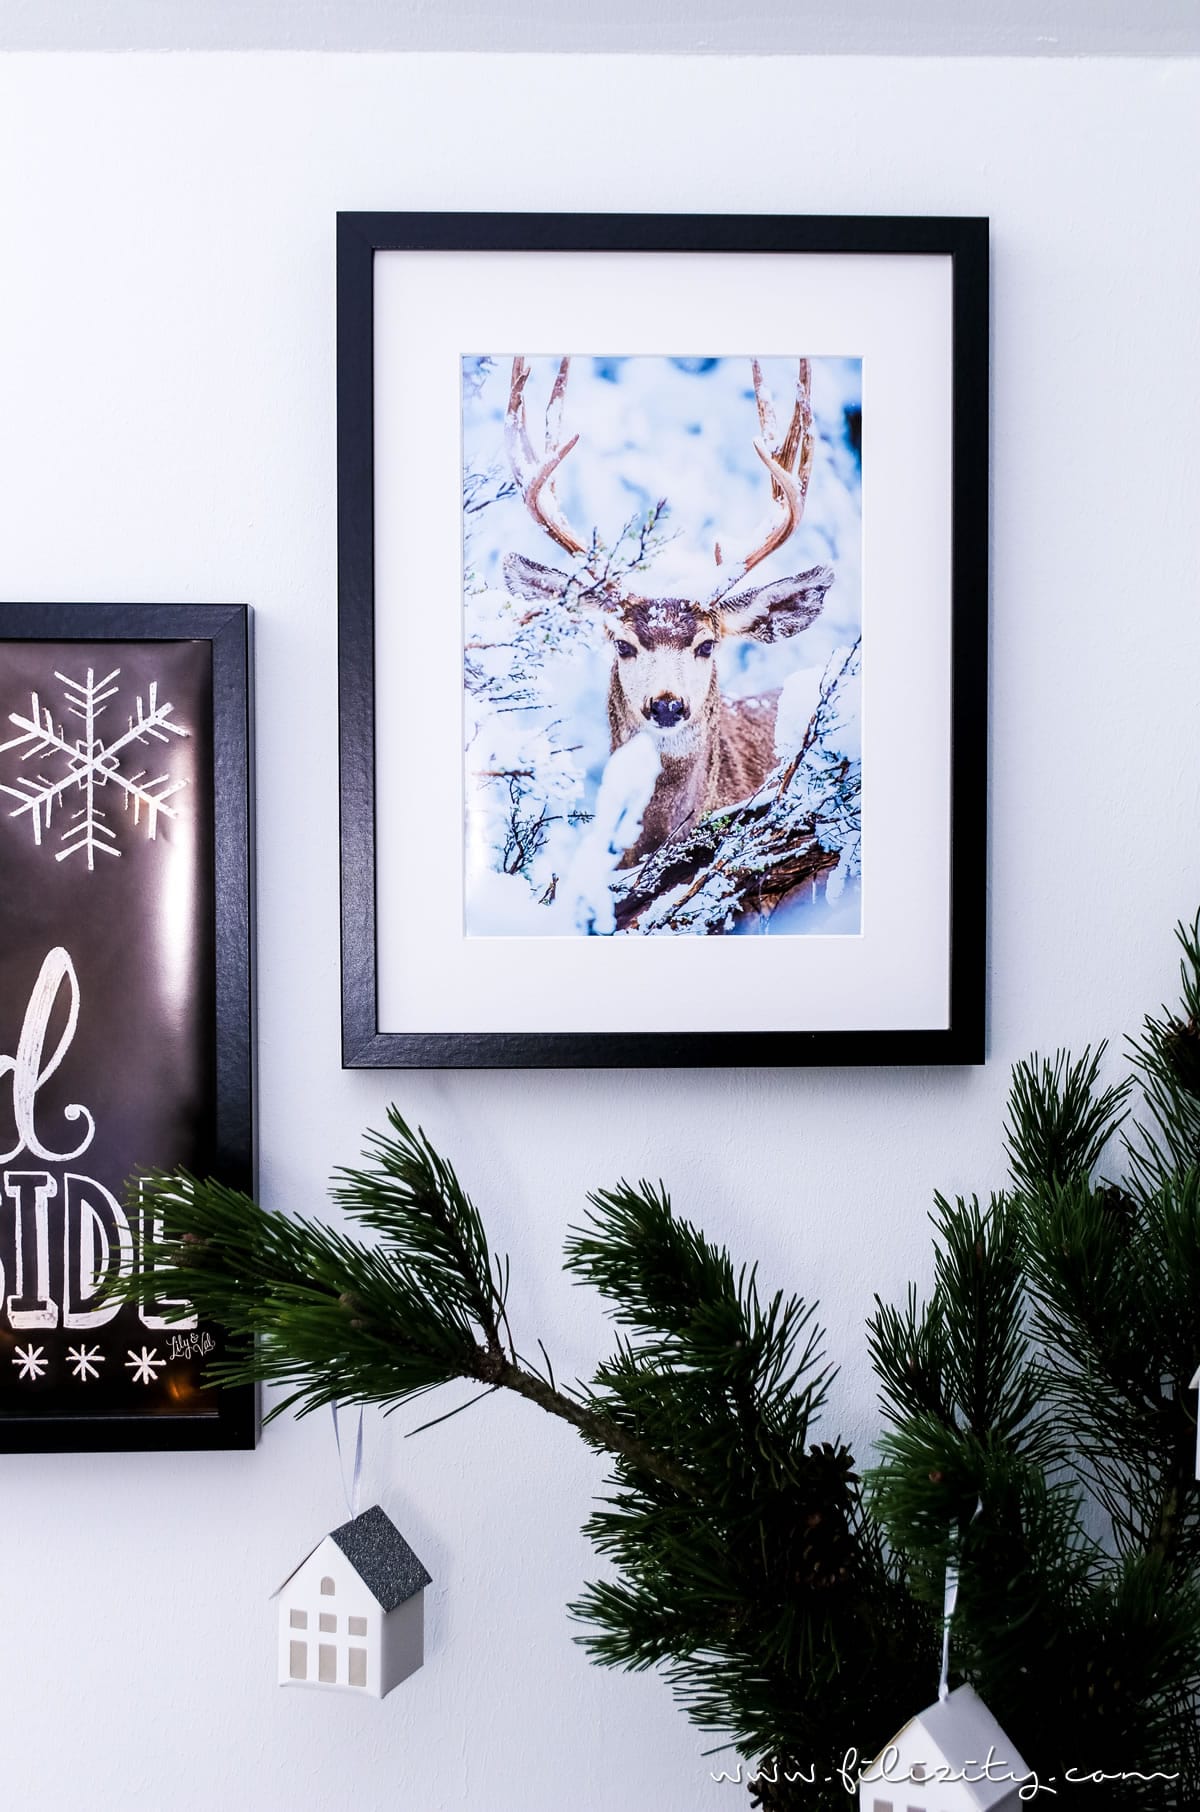 DIY Winterdeko: Hyggelig beleuchtete Poster selber machen mit Postern von Posterlounge | Filizity.com | DIY-Blog aus dem Rheinland #hygge #poster #winterdeko